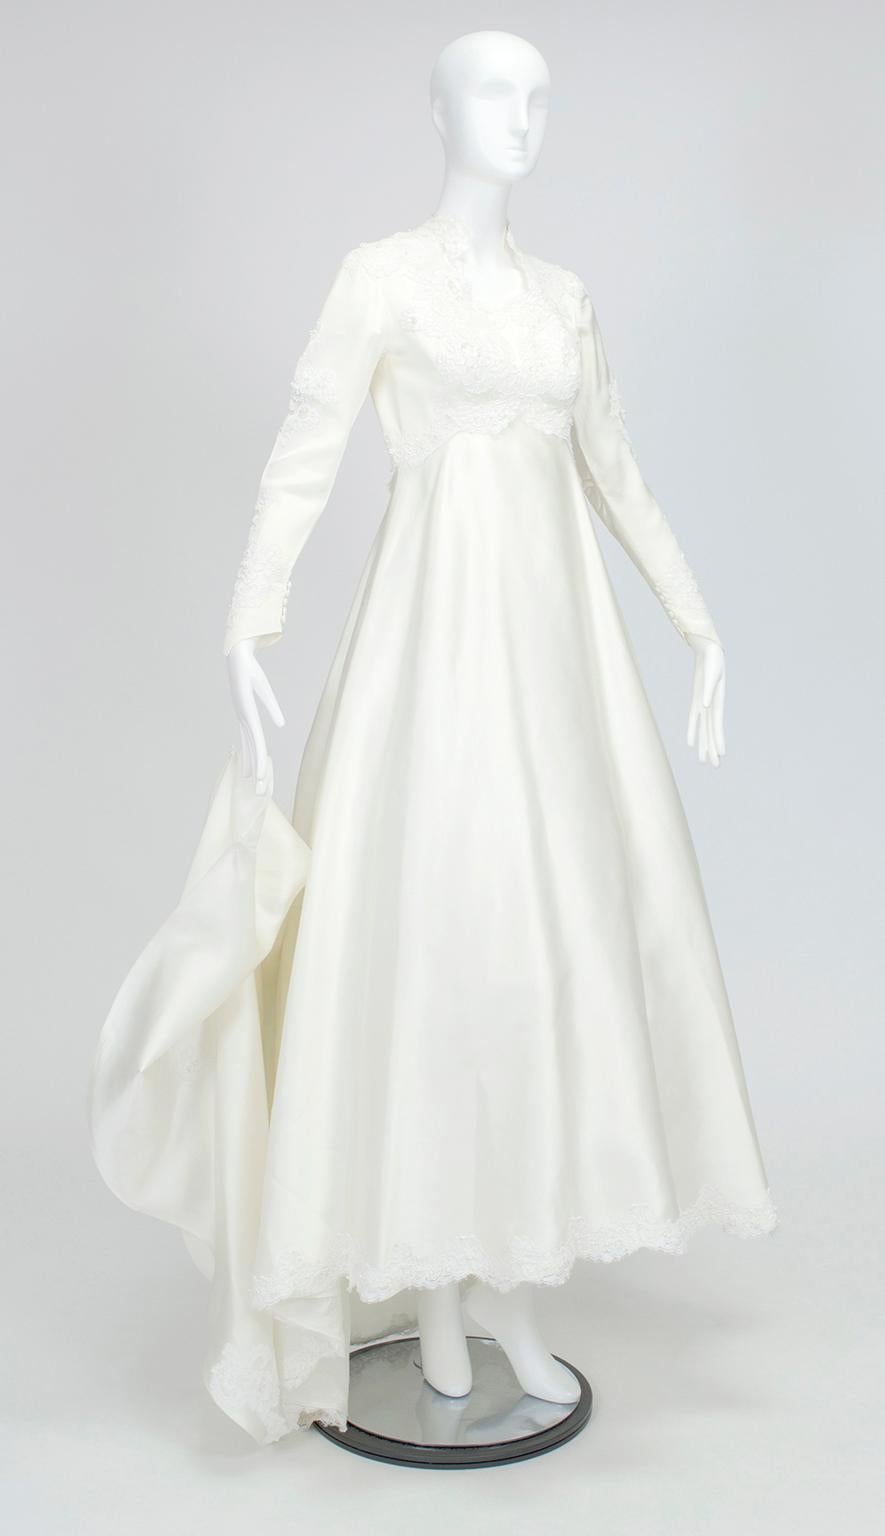 Cette robe de mariée à jupe complète, très traditionnelle et d'allure royale, couvre tous les aspects de la vie. Bien qu'elle dissimule les bras et le cou pour des raisons de bienséance, son encolure Reine Anne donne de l'allure grâce à son plongeon